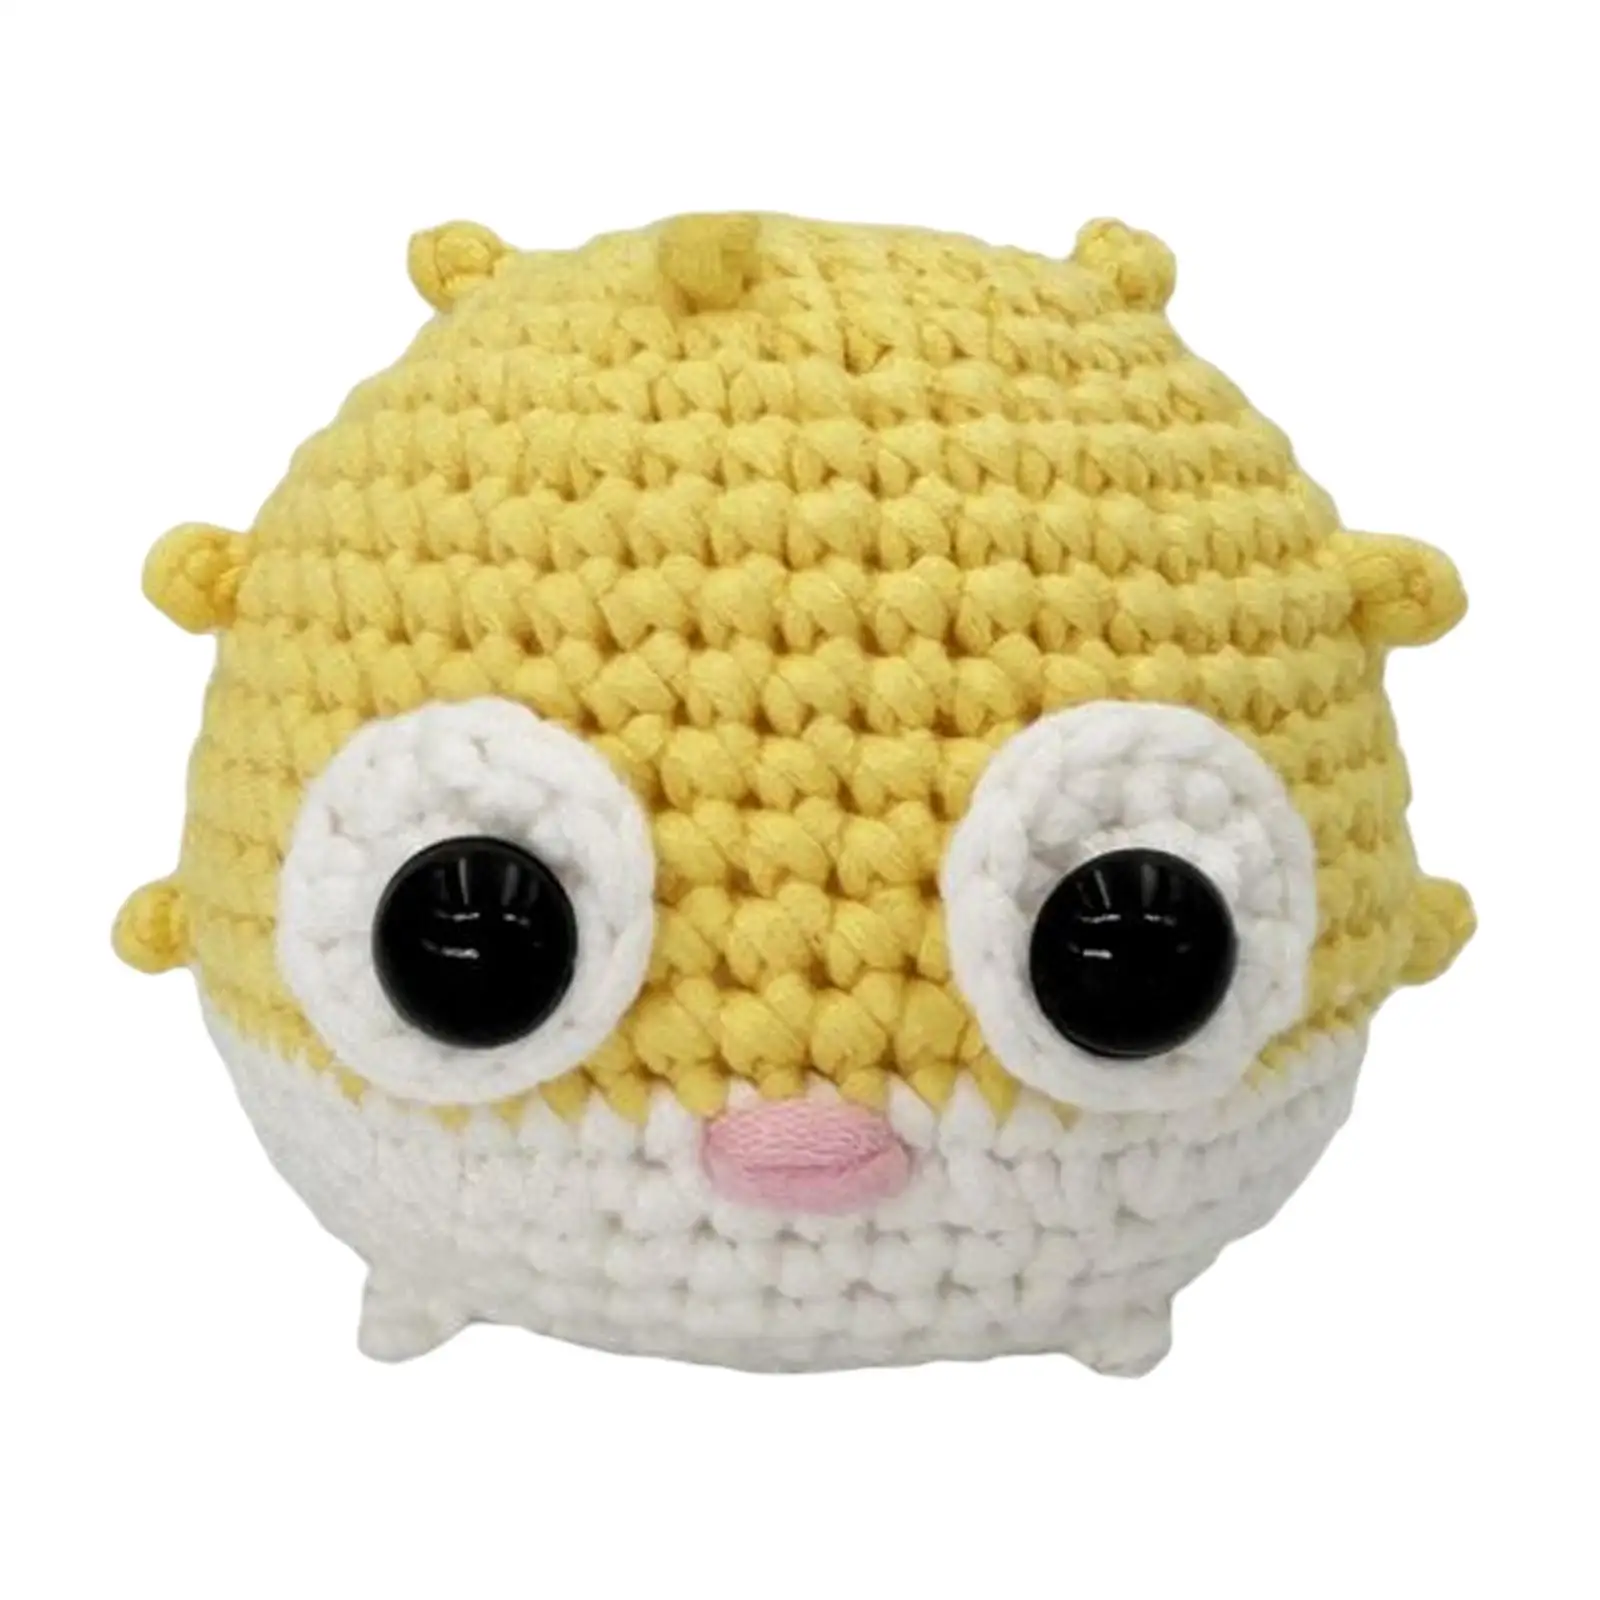 Animal Crochet Kit Make Your Own Starter Classic DIY Puffer Fish Doll Crochet Kit Beginner Crochet Kit for Birthday Gift Adults